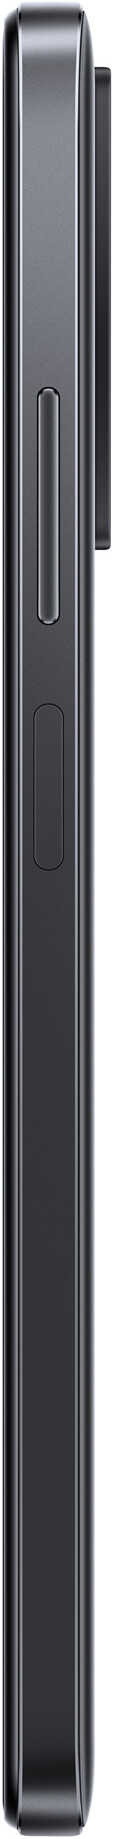 Xiaomi Redmi Note 11 128GB (6GB RAM)